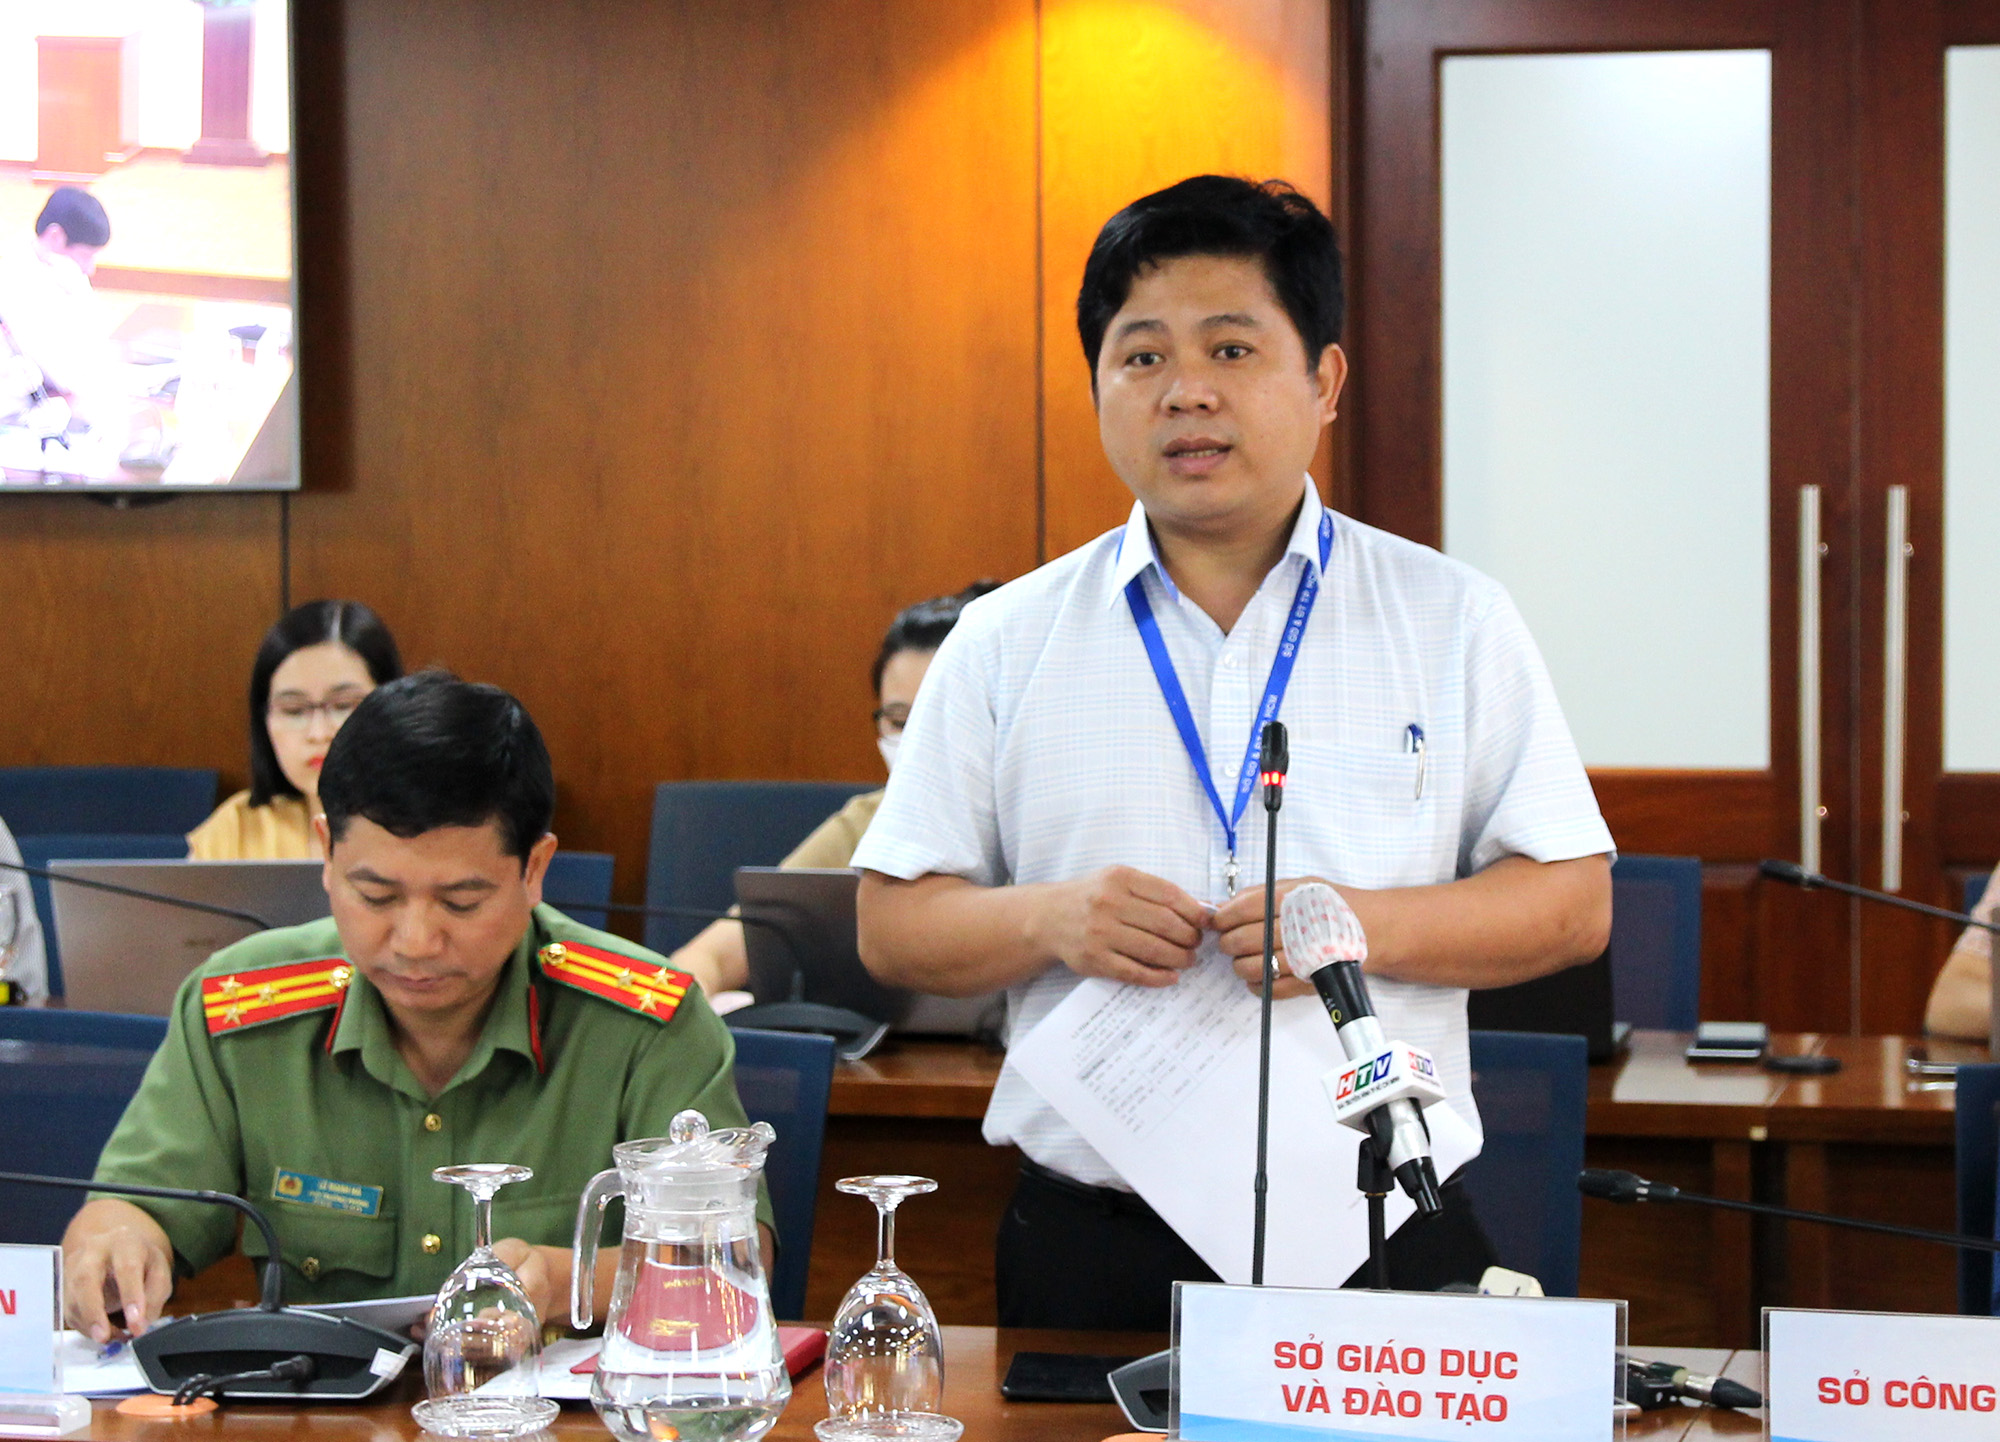 Đồng chí Hồ Tấn Minh, Chánh văn phòng Sở Giáo dục và Đào tạo tại buổi họp báo (Ảnh Hoàng Hào).